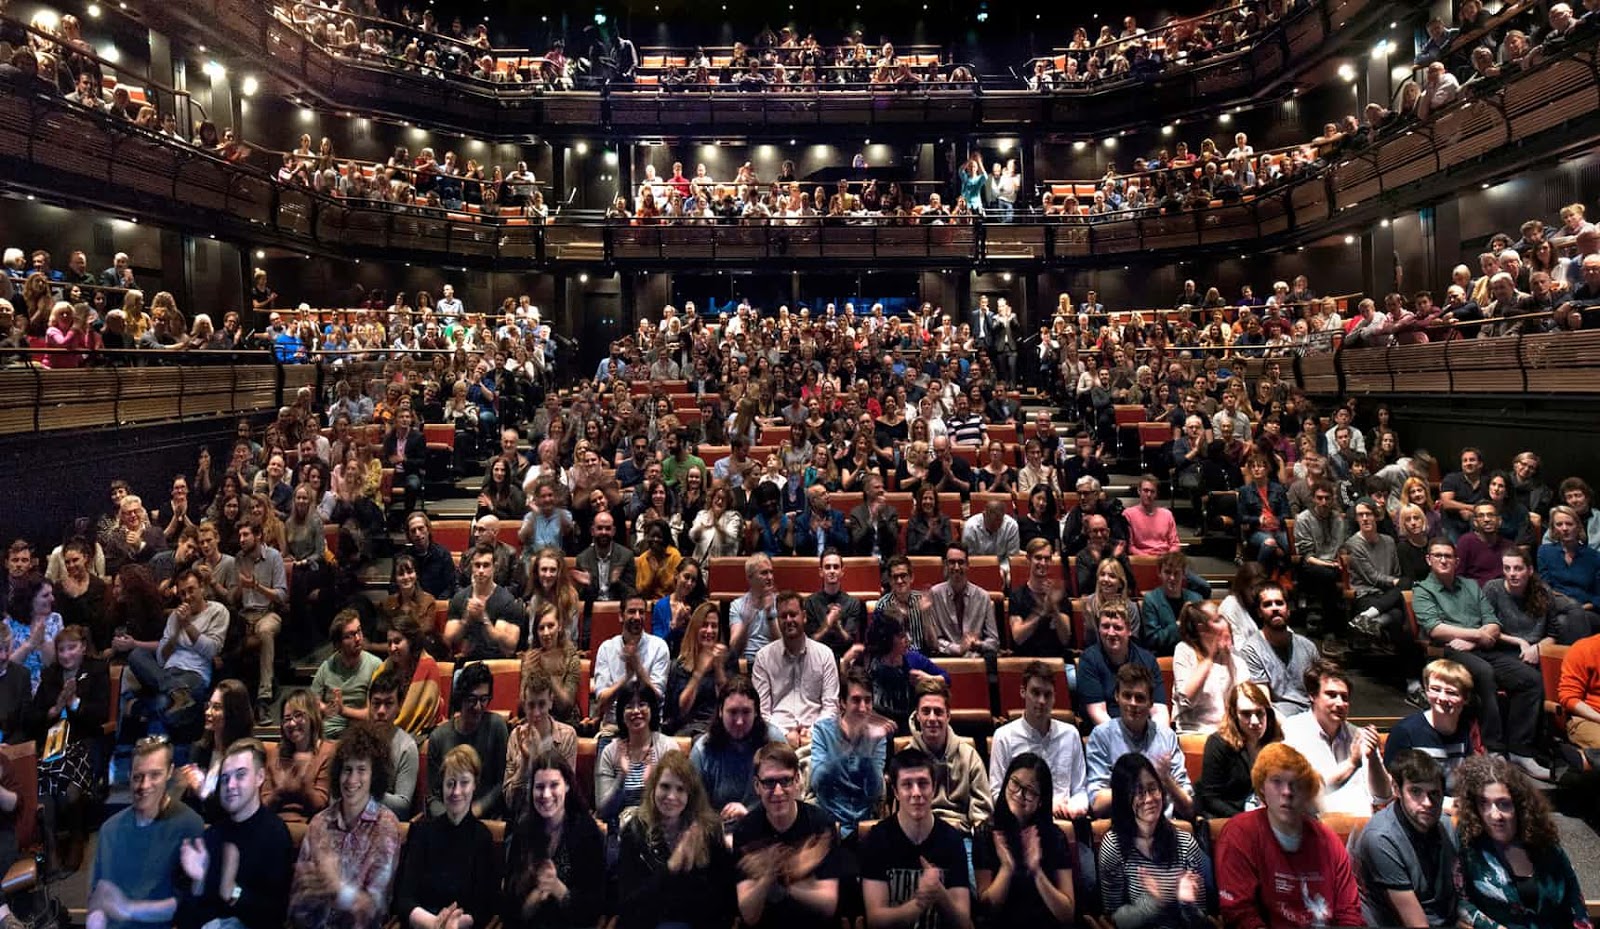 Theatre audience. Театральный бридж. Audience in Theatre. Театр новые лица. Мюзикле «the audience» в Лондоне зрители.